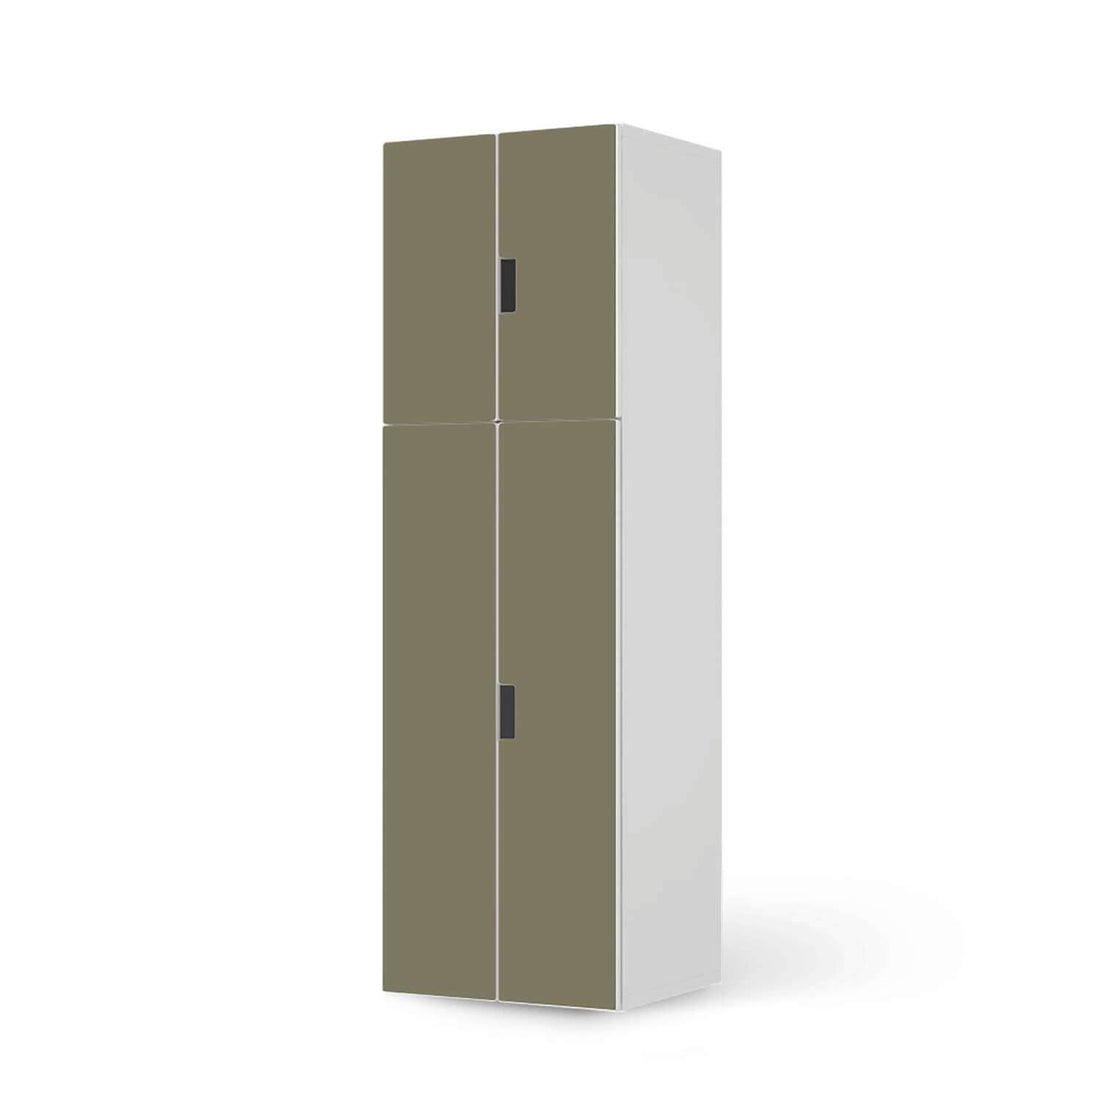 Selbstklebende Folie Braungrau Light - IKEA Stuva kombiniert - 2 große Türen und 2 kleine Türen (Kombination 2)  - weiss